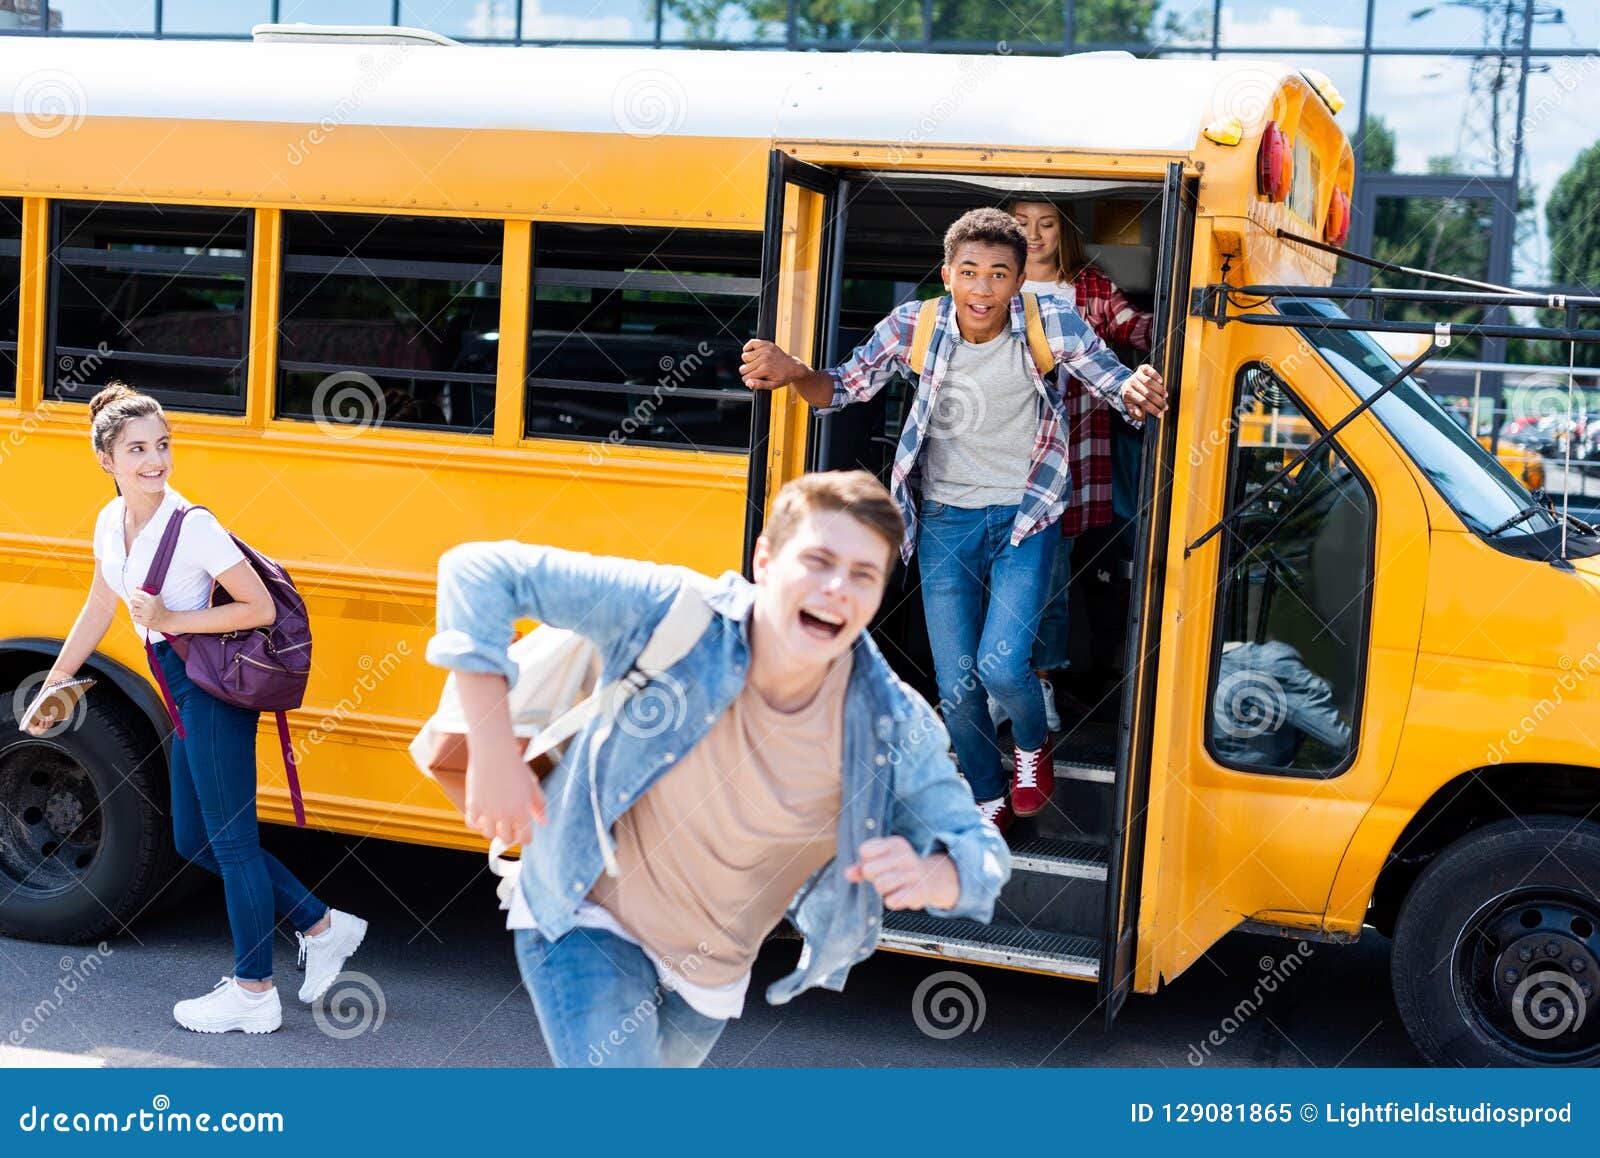 На остановке общественного транспорта подростки нецензурно. Подростки в автобусе. Подростки на экскурсии. Группа подростков на экскурсии. Поездка подростков на школьном автобусе.